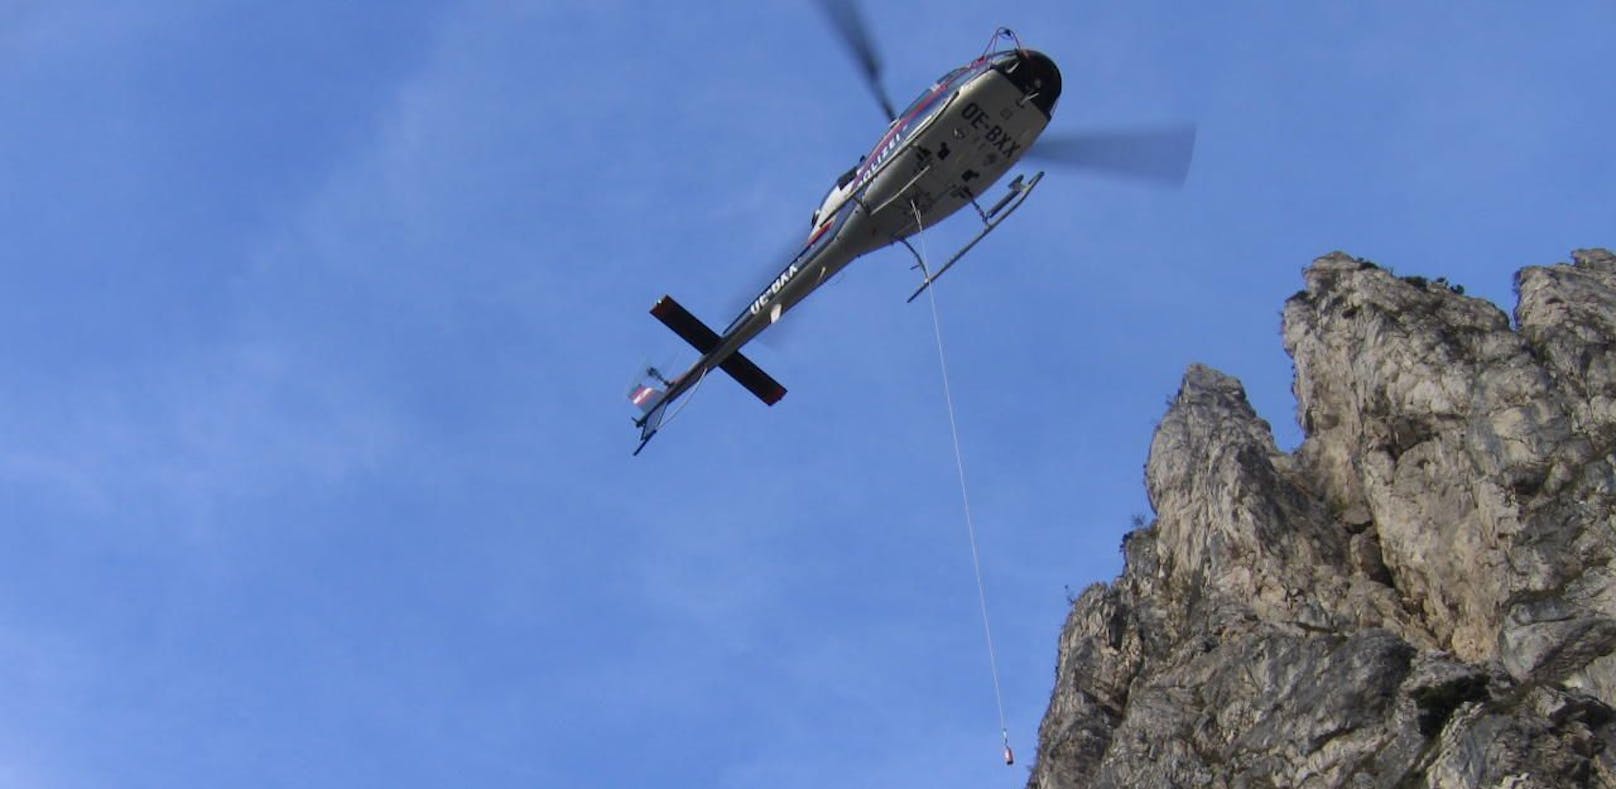 Polizei-Heli rettete Touristen von Klettersteig